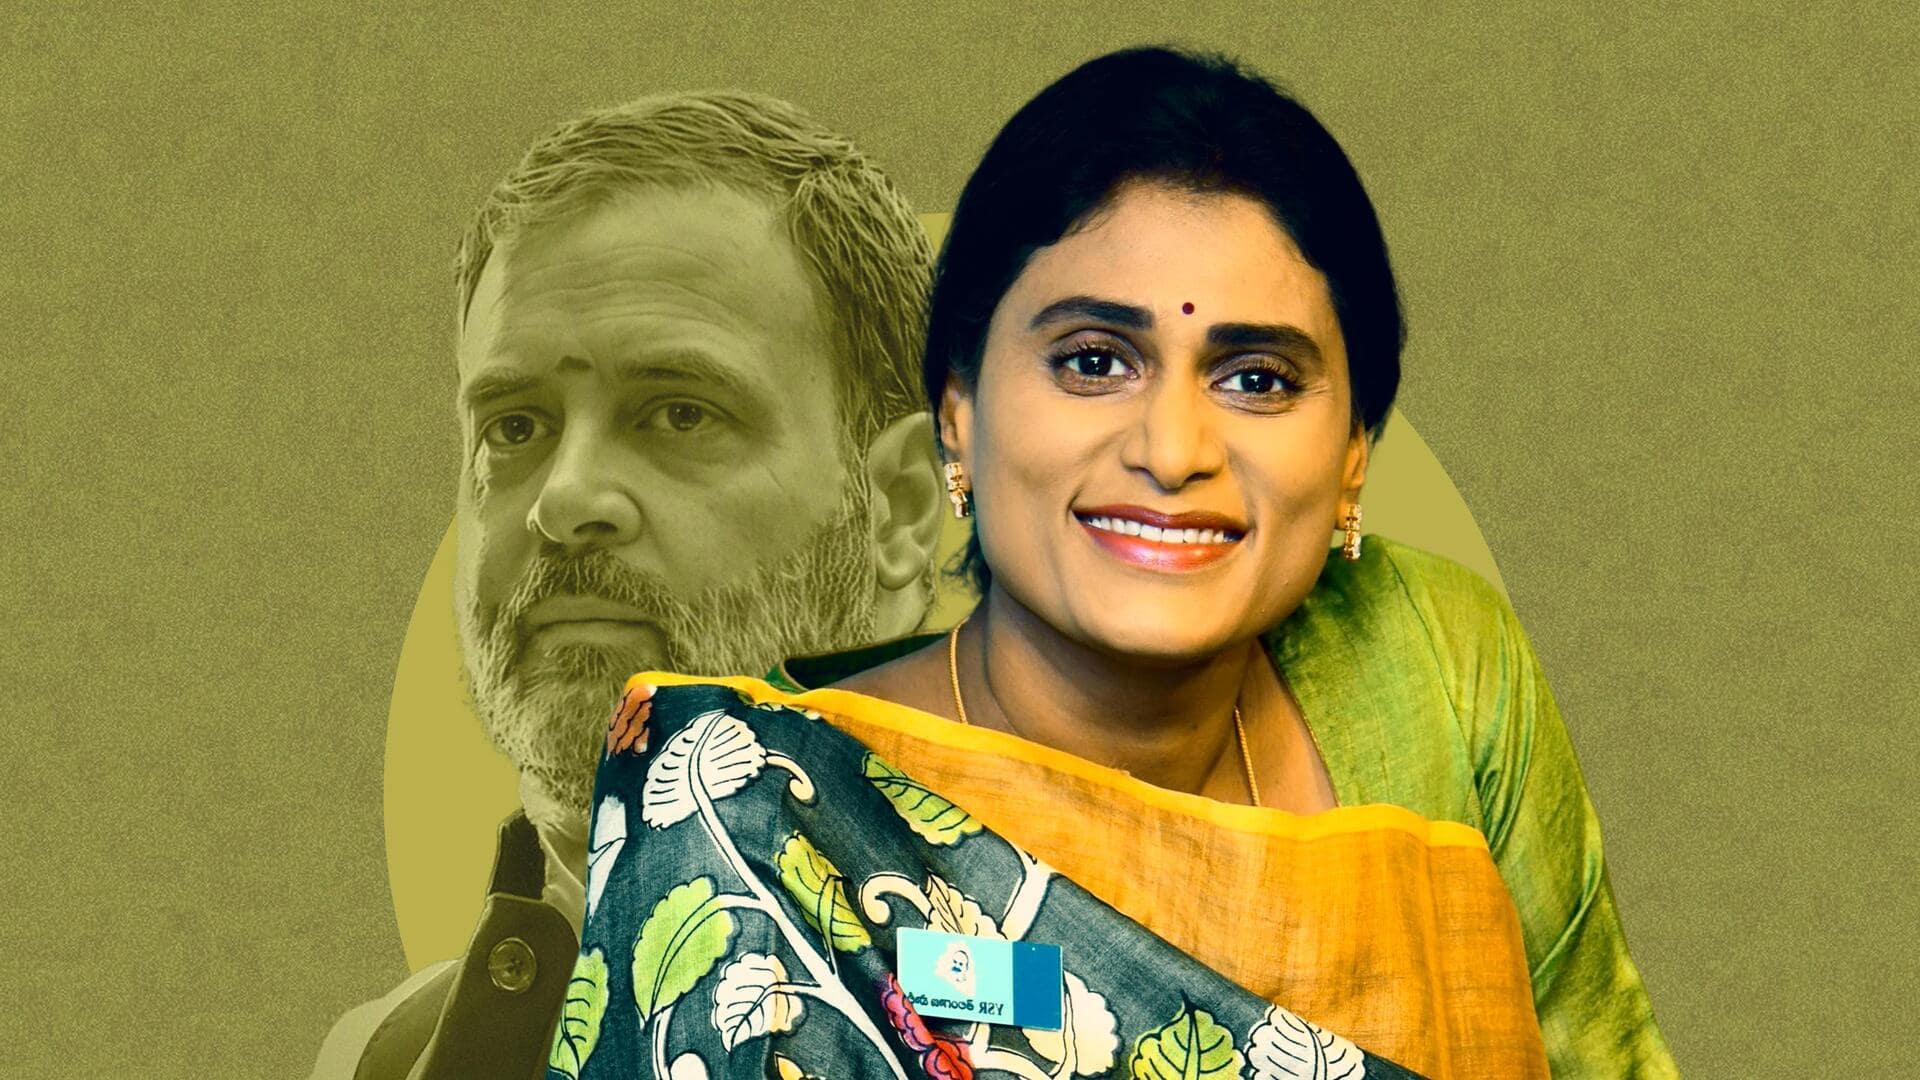 आंध्र प्रदेश: मुख्यमंत्री जगन रेड्डी का साथ छोड़ेंगी बहन शर्मिला, कांग्रेस में होंगी शामिल- रिपोर्ट